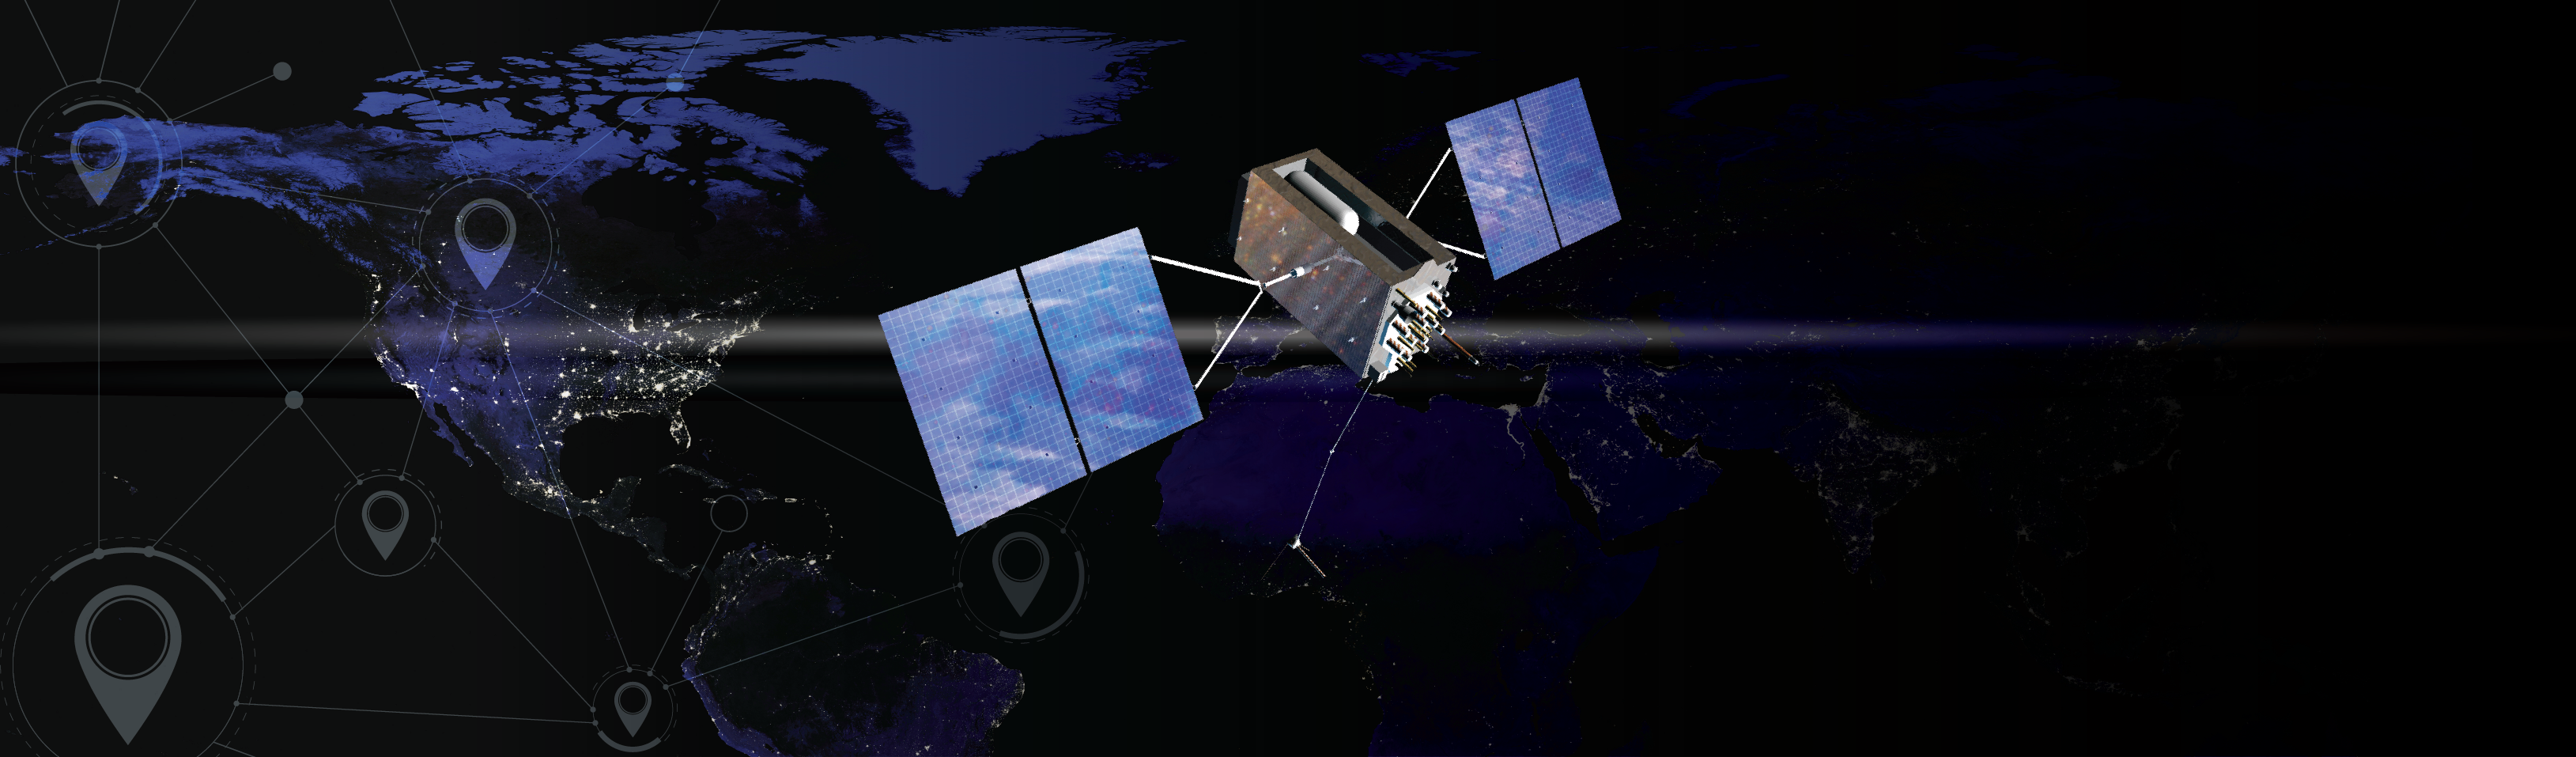 Аппаратура спутниковой навигации «сигнал s-4752». Спутник GPS. Спутниковая система ГЛОНАСС. GPS история создания.